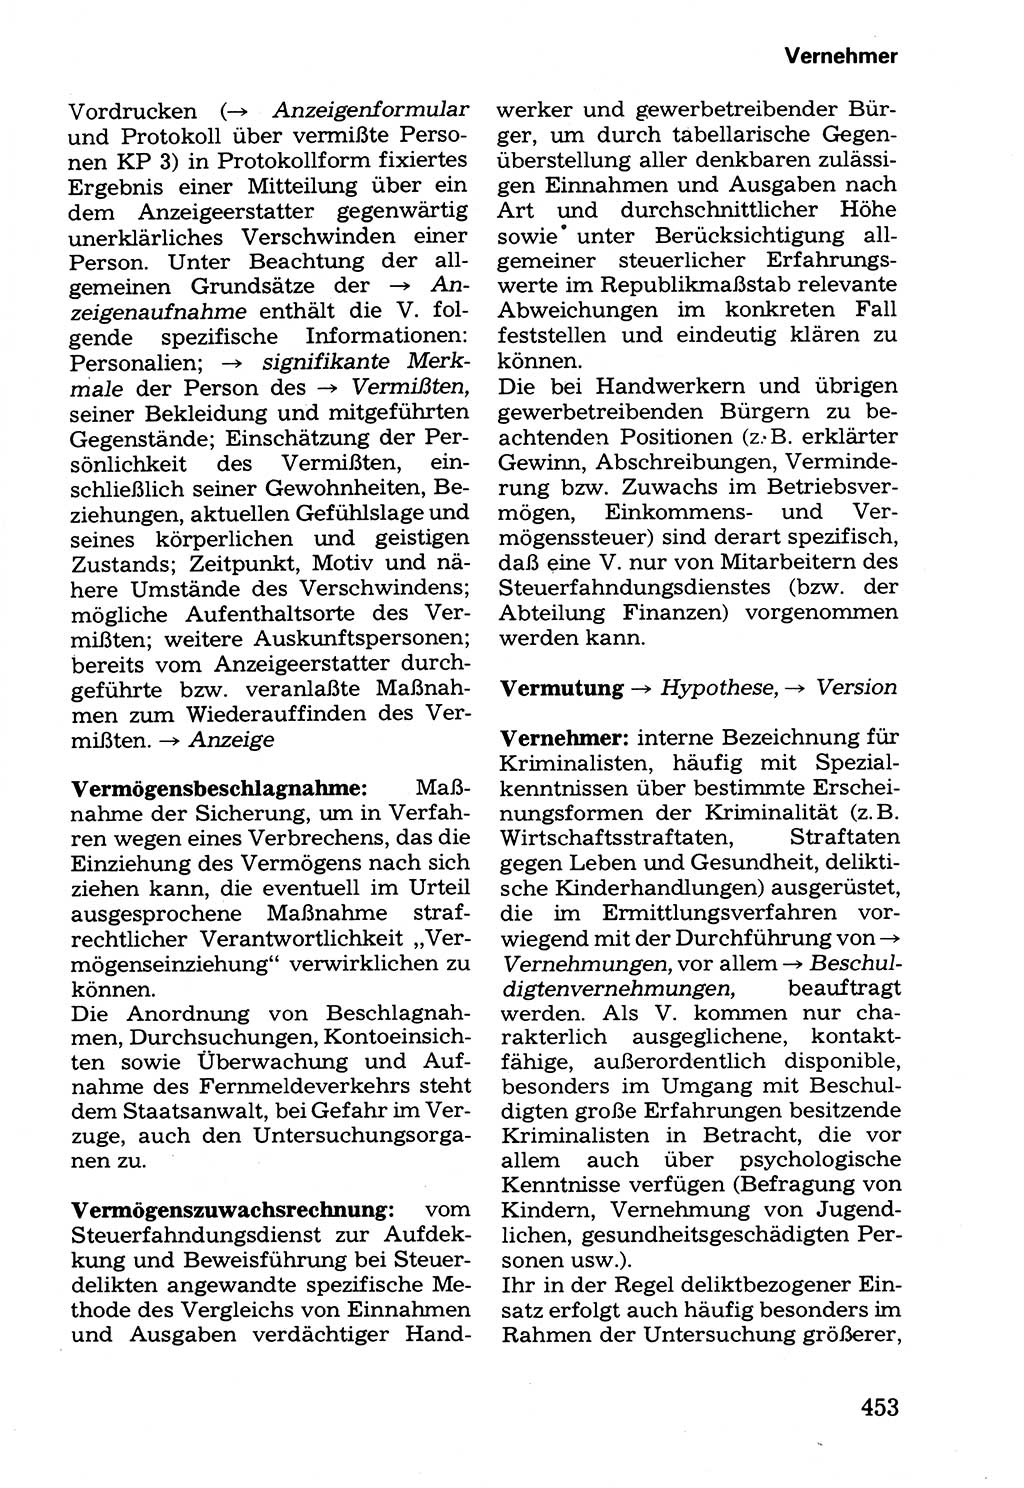 Wörterbuch der sozialistischen Kriminalistik [Deutsche Demokratische Republik (DDR)] 1981, Seite 453 (Wb. soz. Krim. DDR 1981, S. 453)